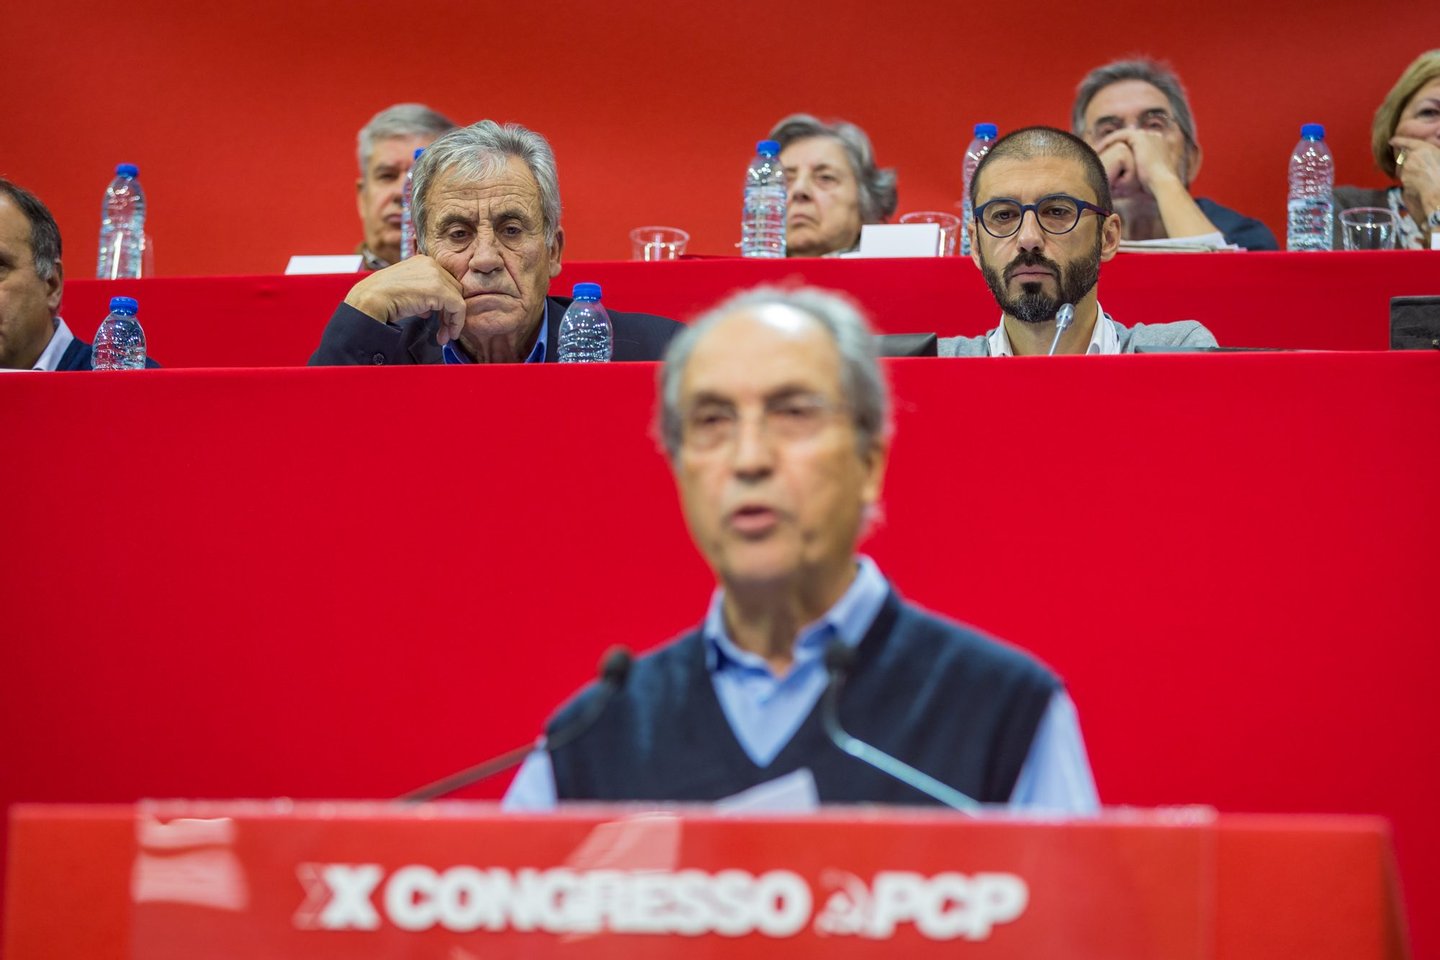 congresso PCP, partido comunista portuguÃªs, carlos carvalhas, 